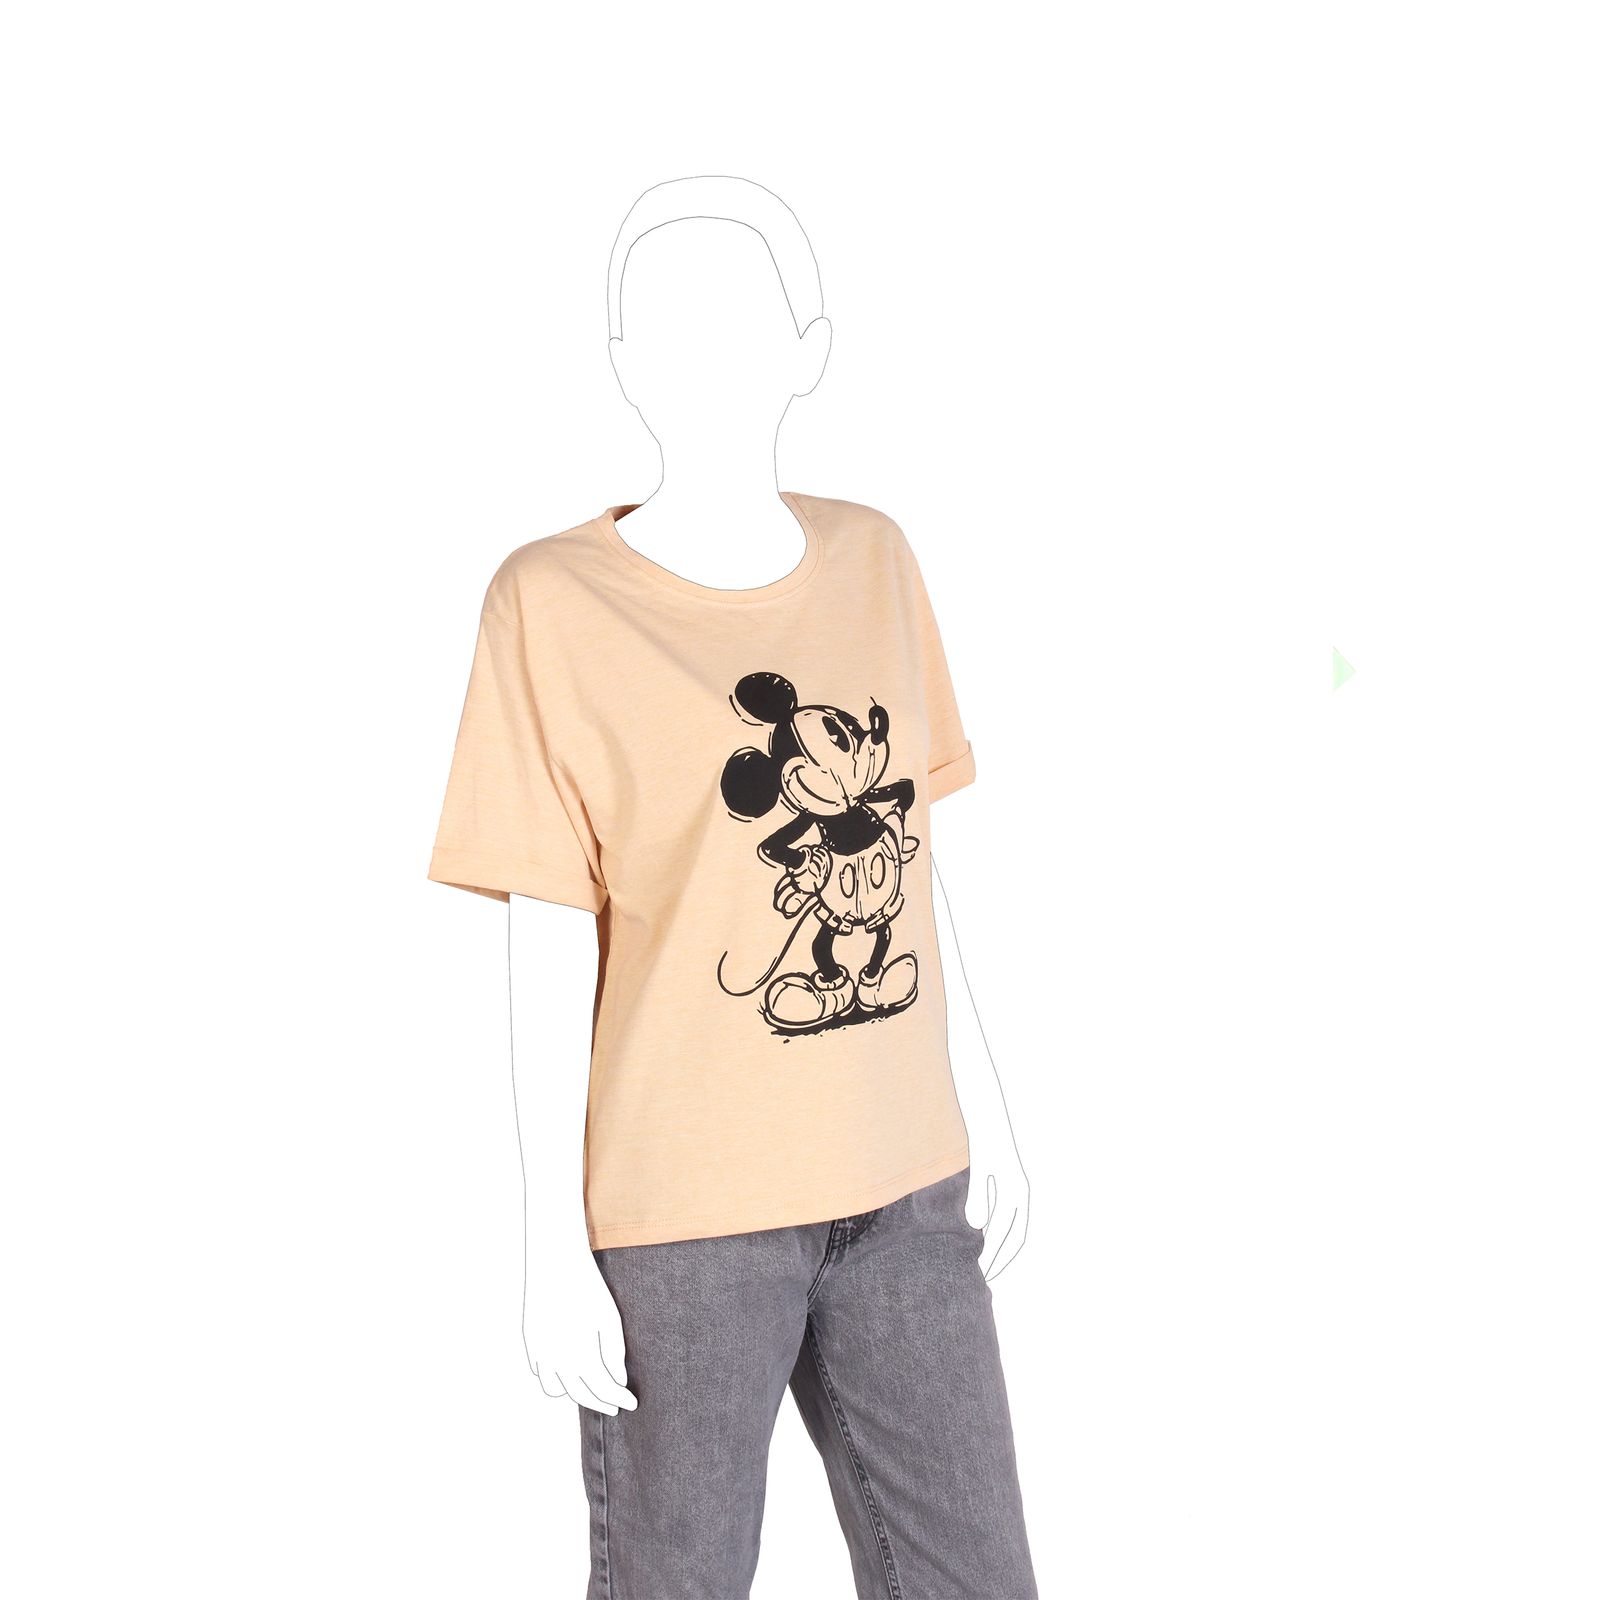 تی شرت آستین کوتاه زنانه ریس مدل میکی موس 106001017 -  - 3